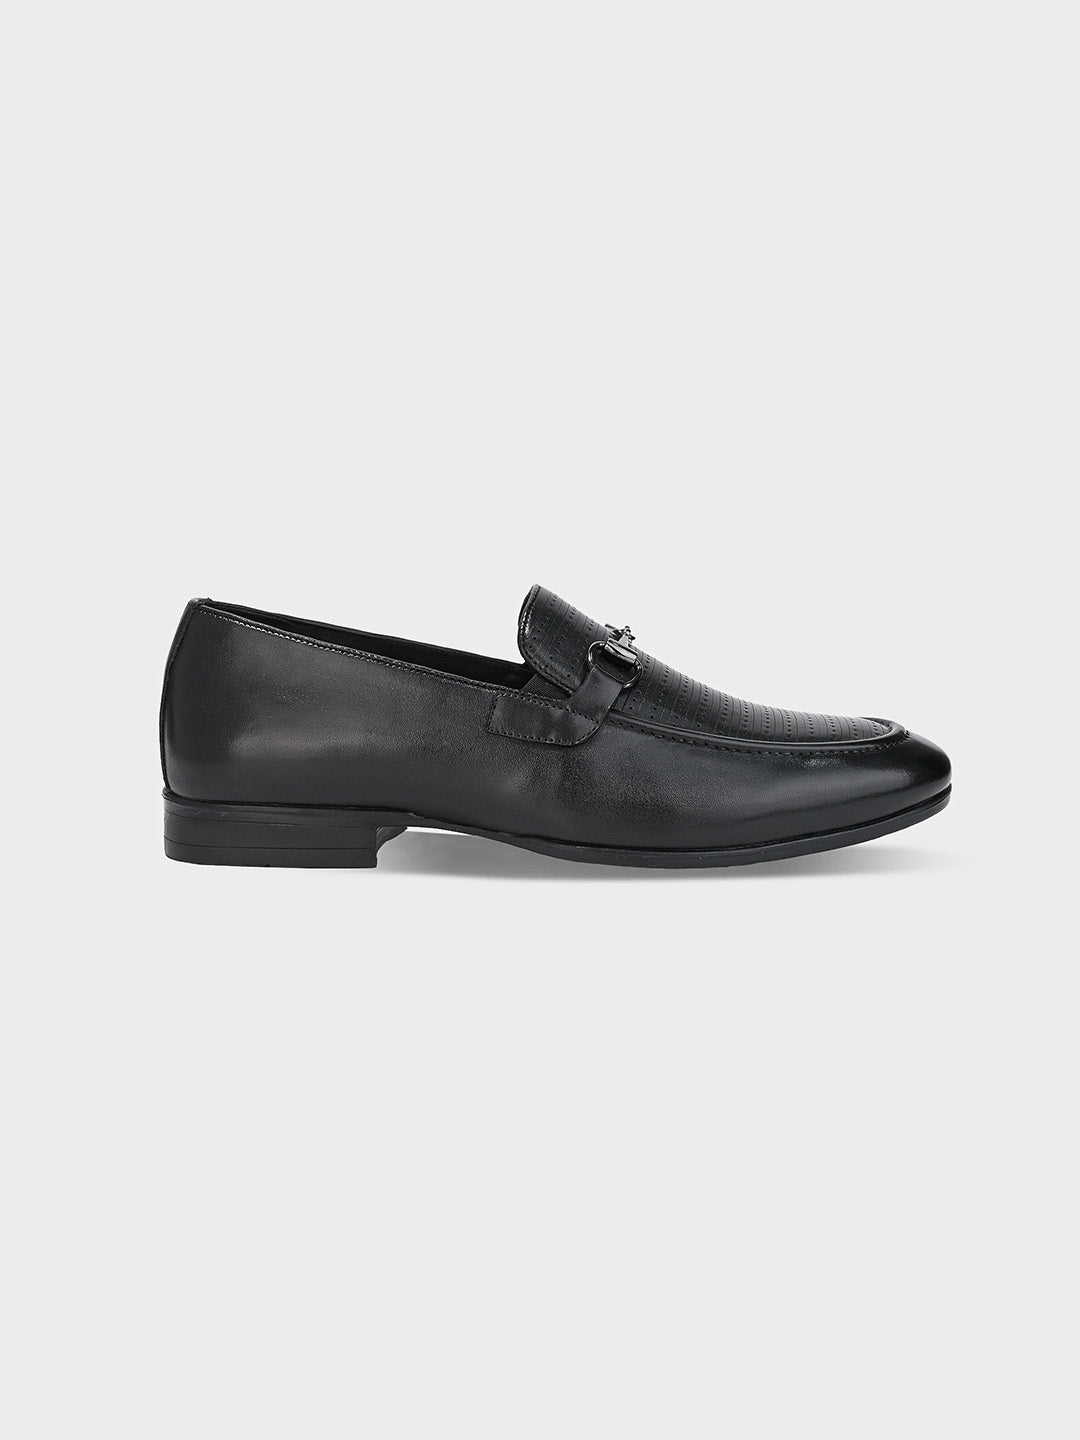 Black Leather Men's Loafer Slip-On Shoes